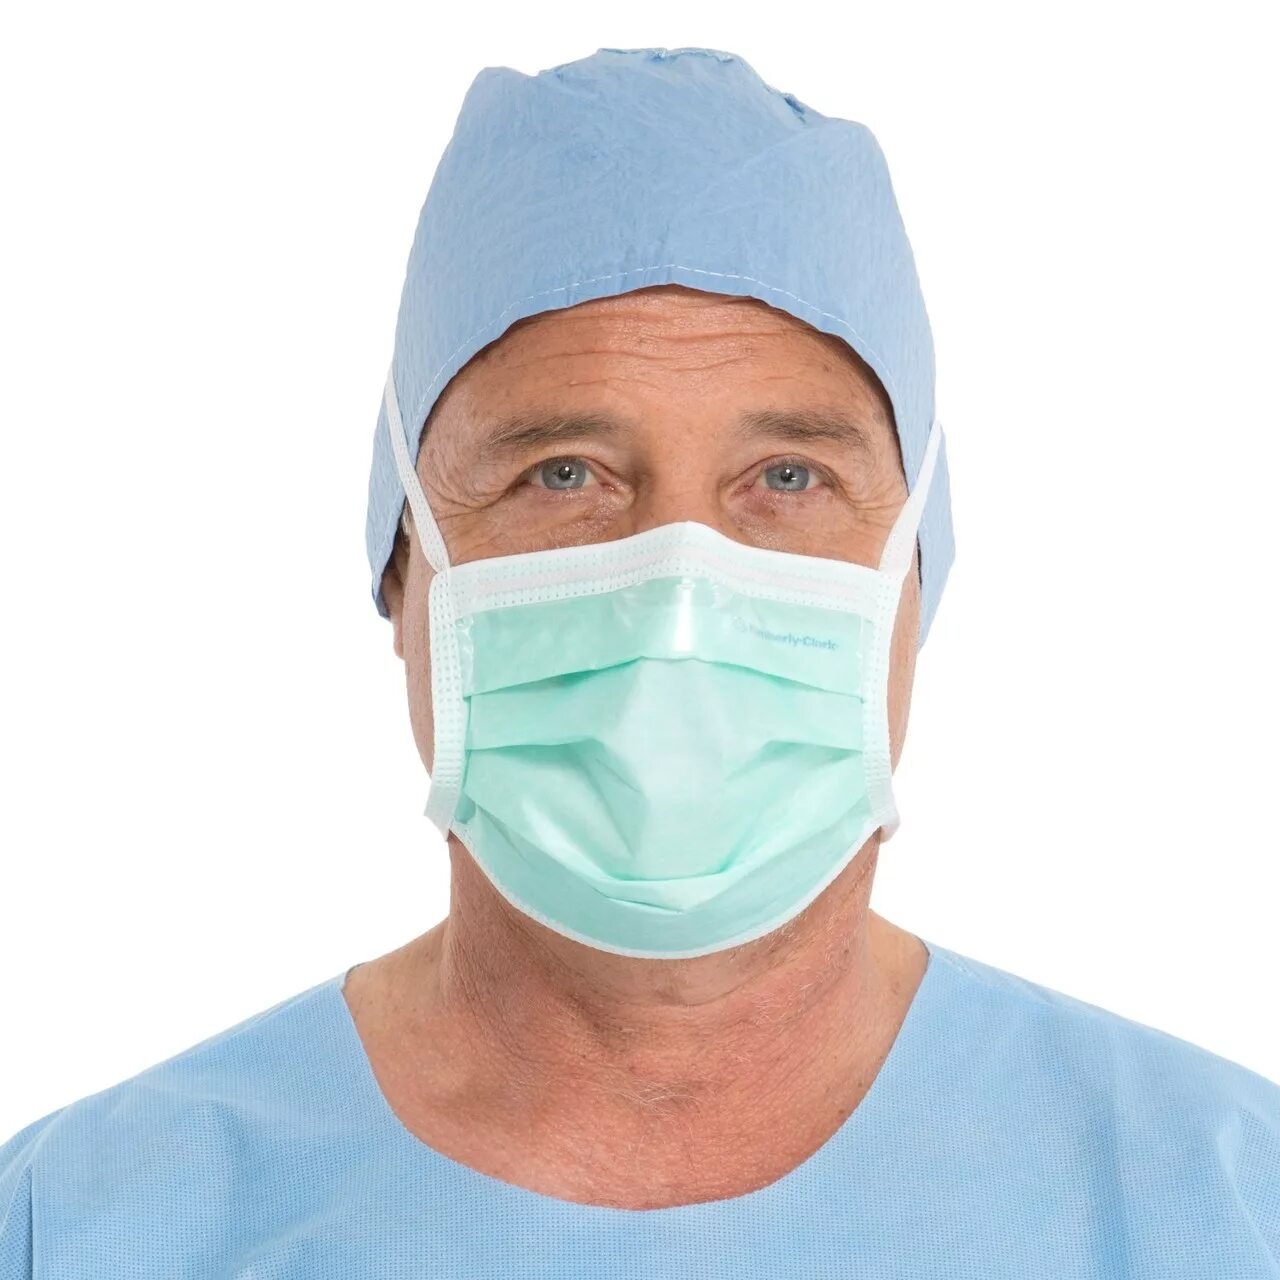 Медицинские маски Kimberly Clark. Хирургическая маска. Хирургическая маска для лица. Врач в маске. Использование медицинских масок